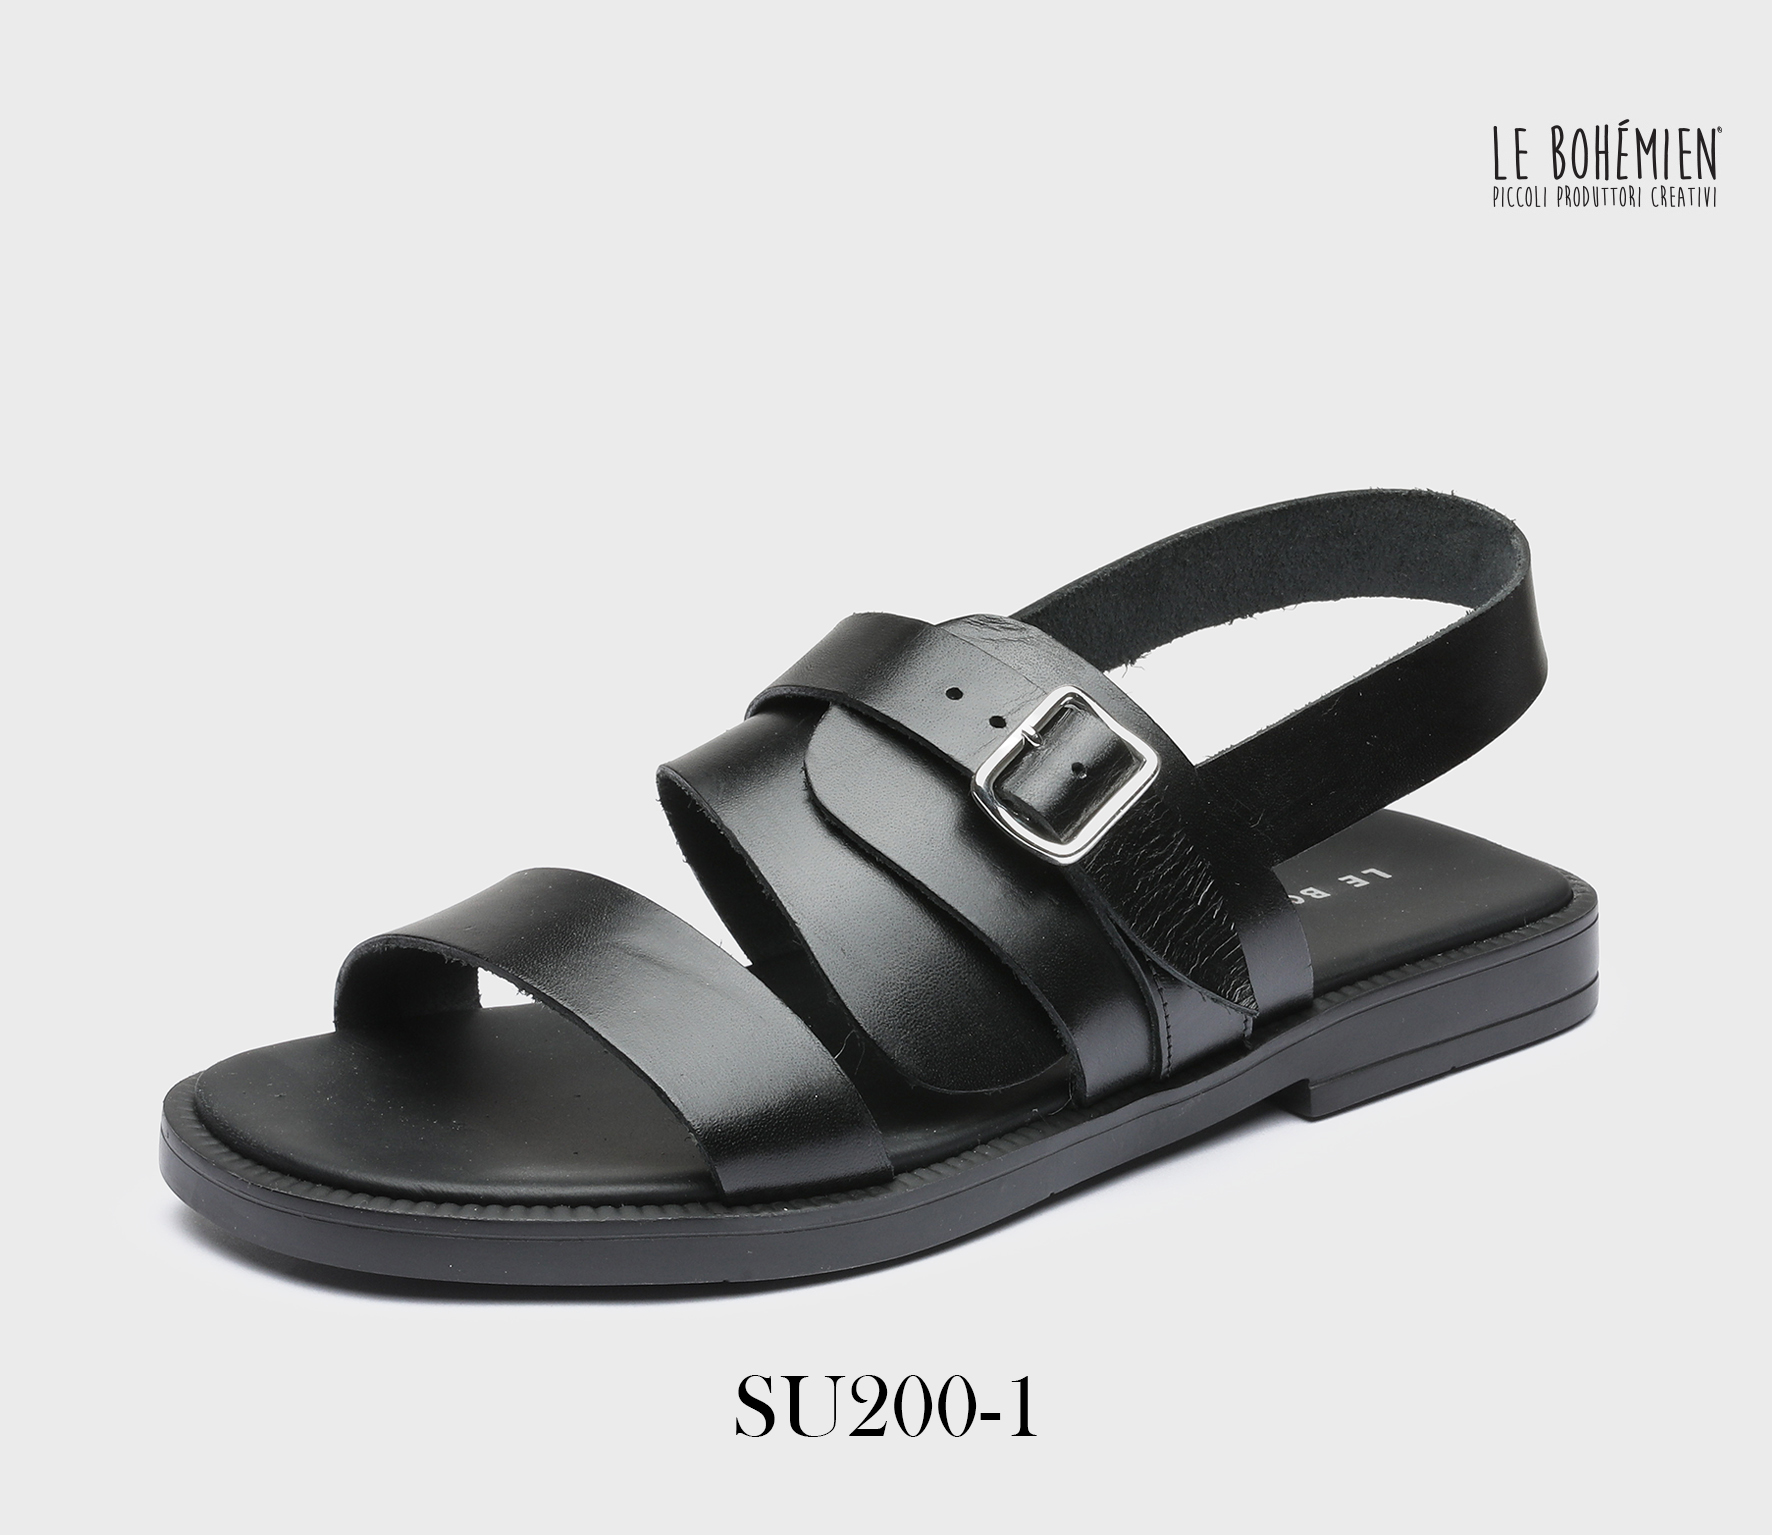 Men's Sandals Shoes SU200-1